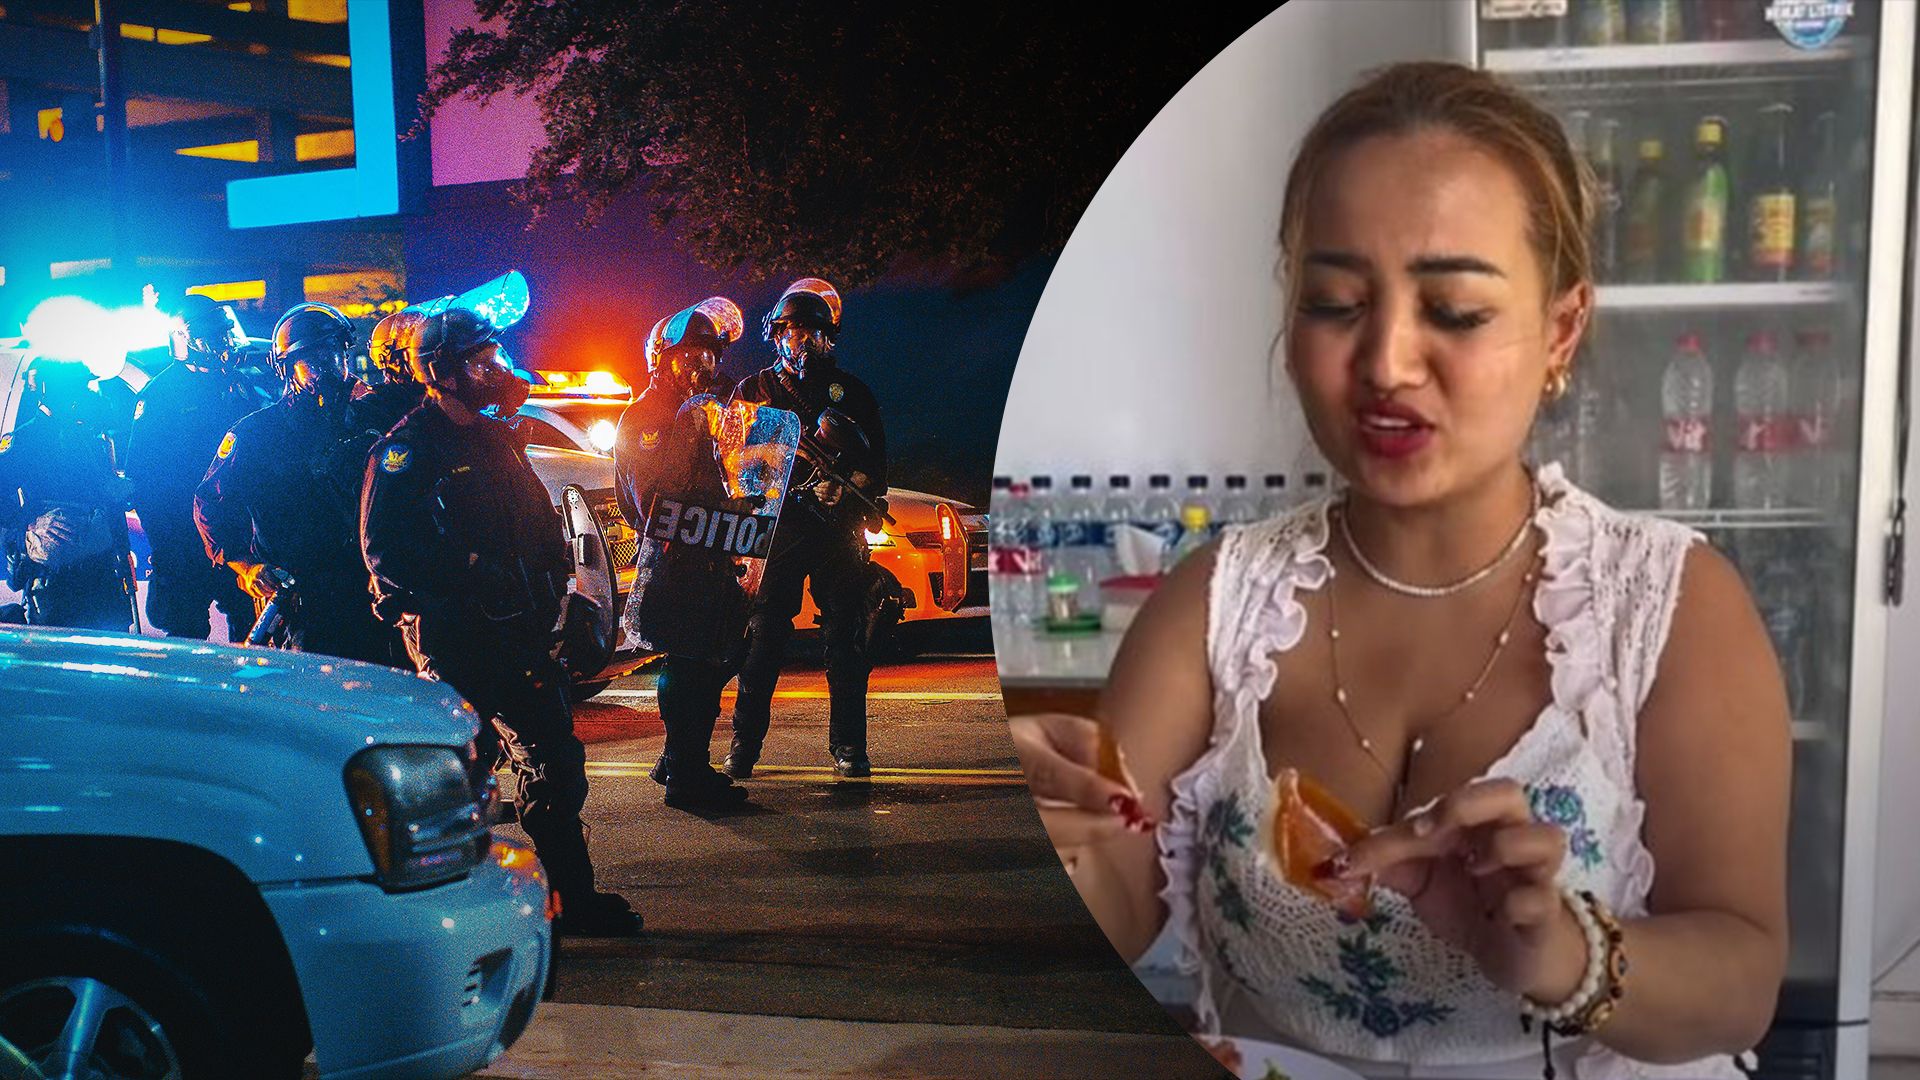 Женщина ела свинину на видео – ее арестовали и оштрафовали